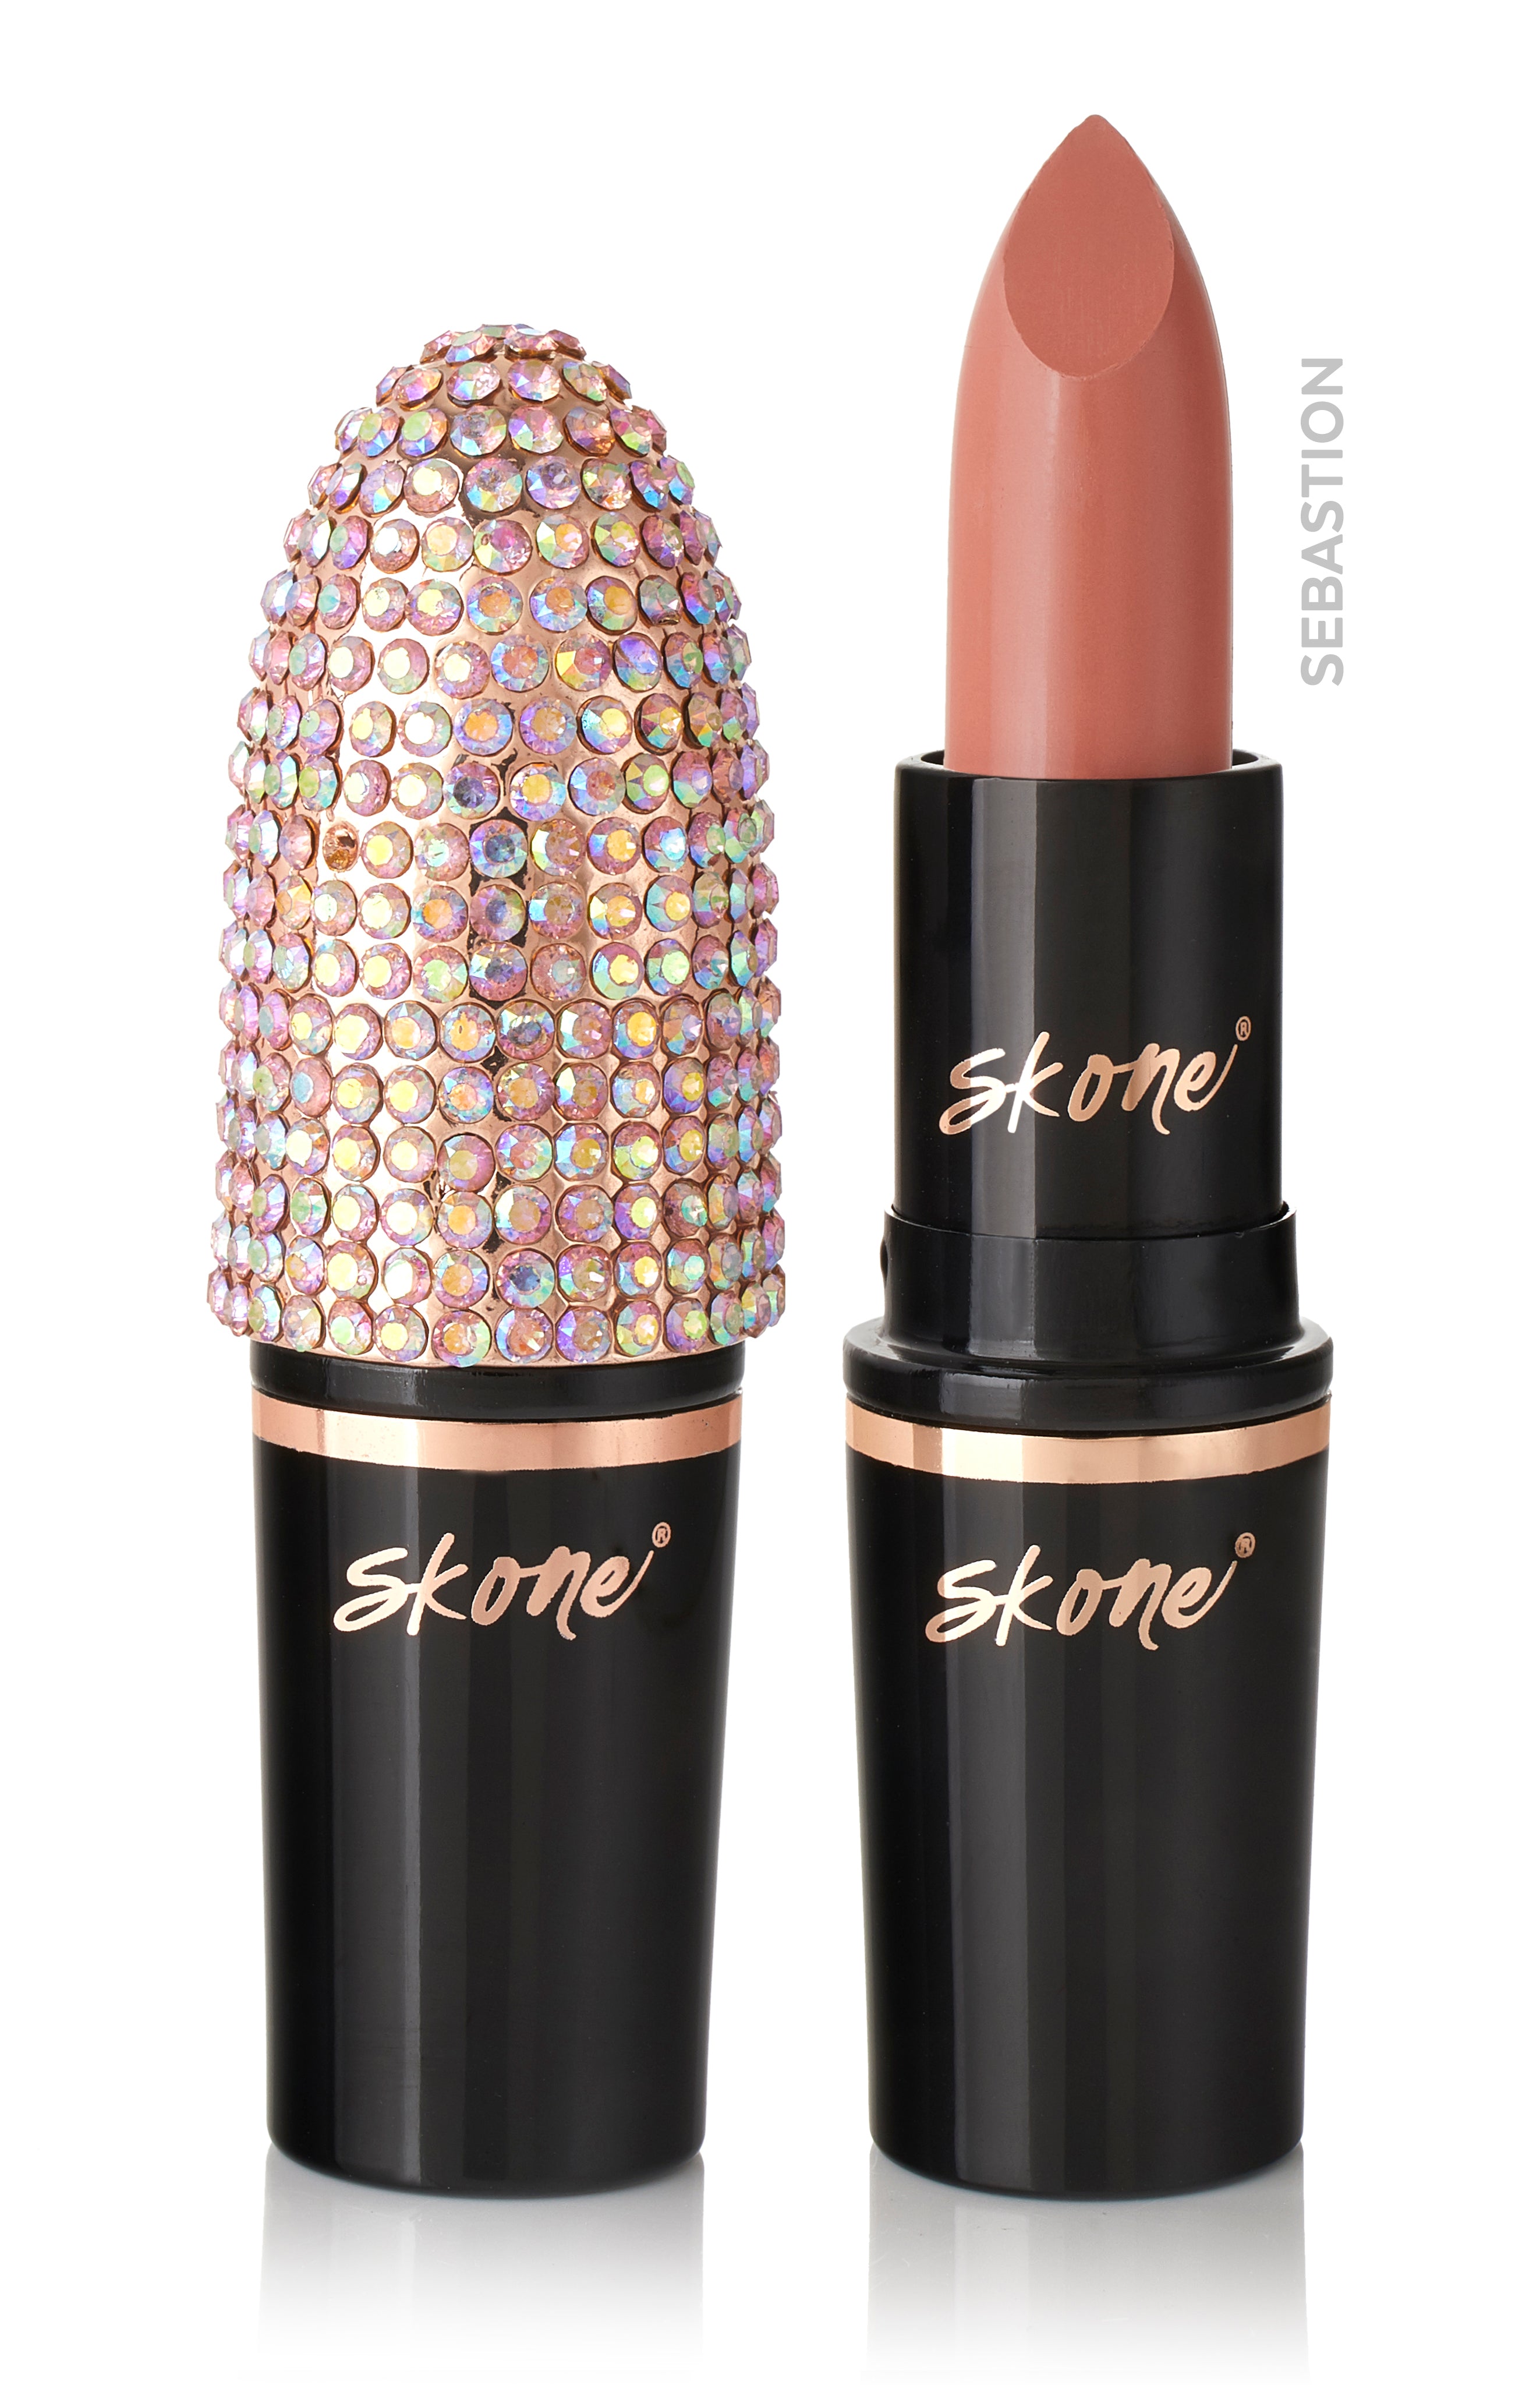 Barra de labios Colour Lipstick - 12 - Nude Beige - Bell